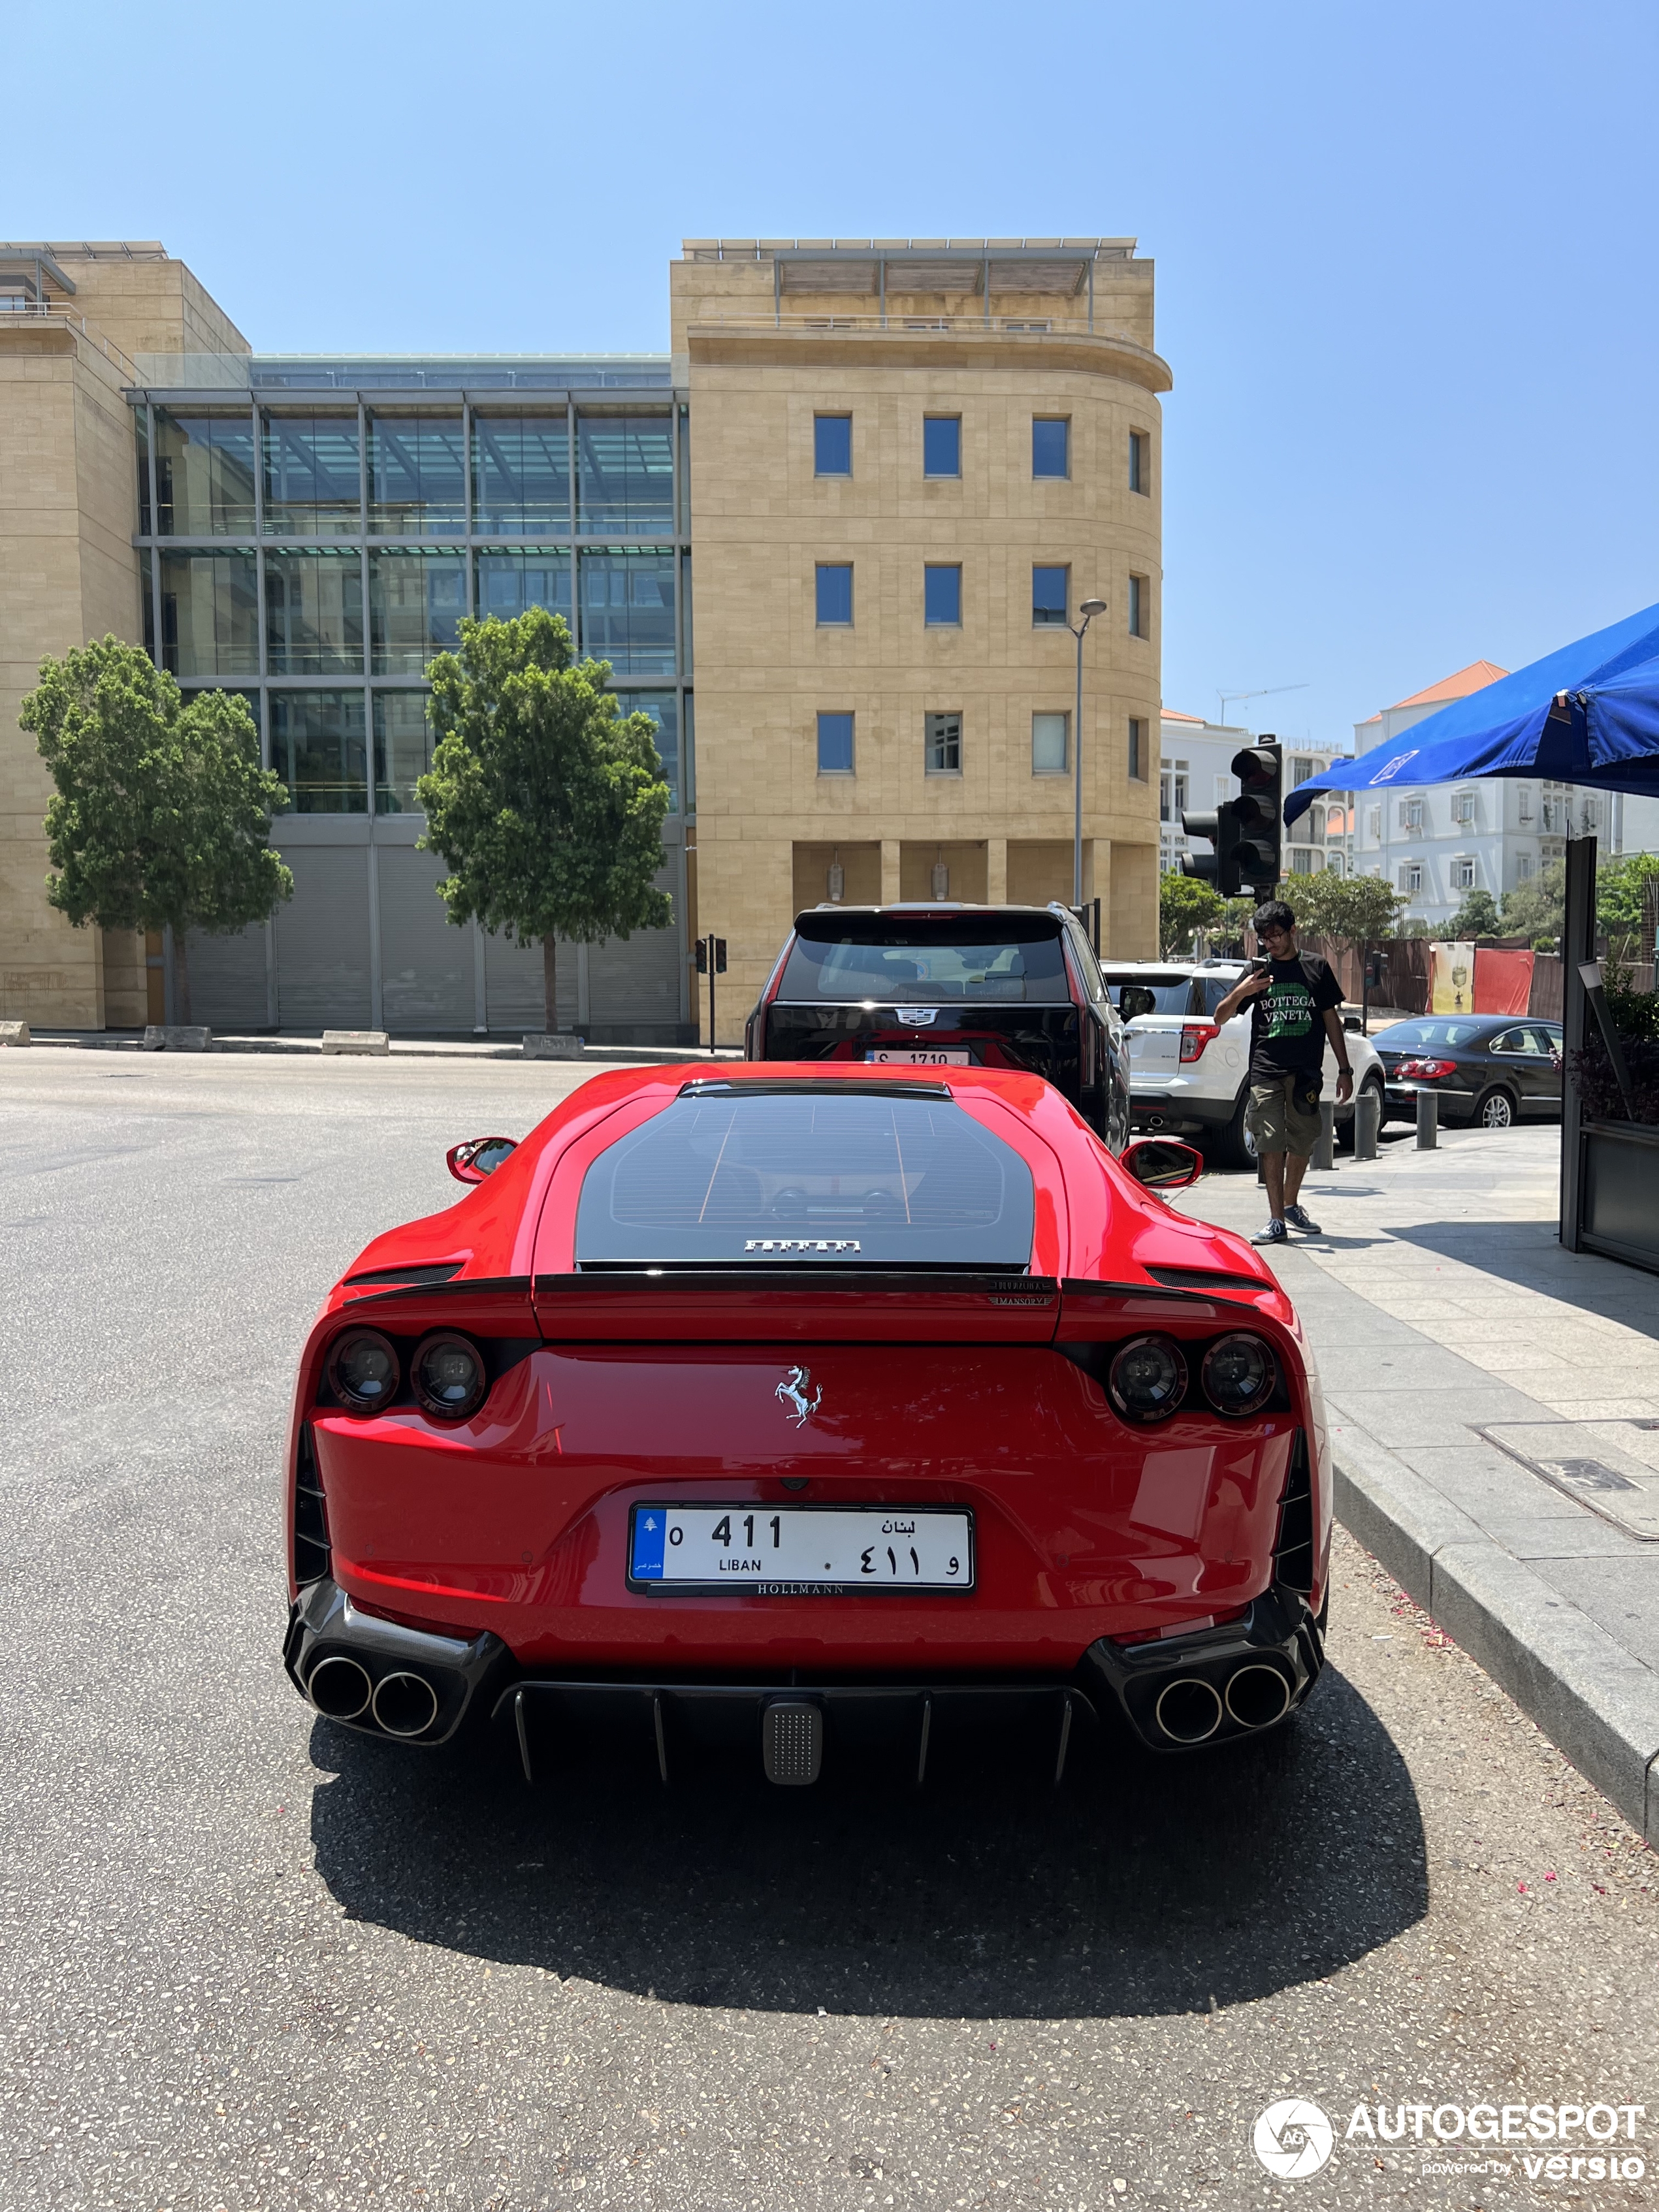 Gelukkig zijn er ook nog Ferrari's te spotten in Libanon